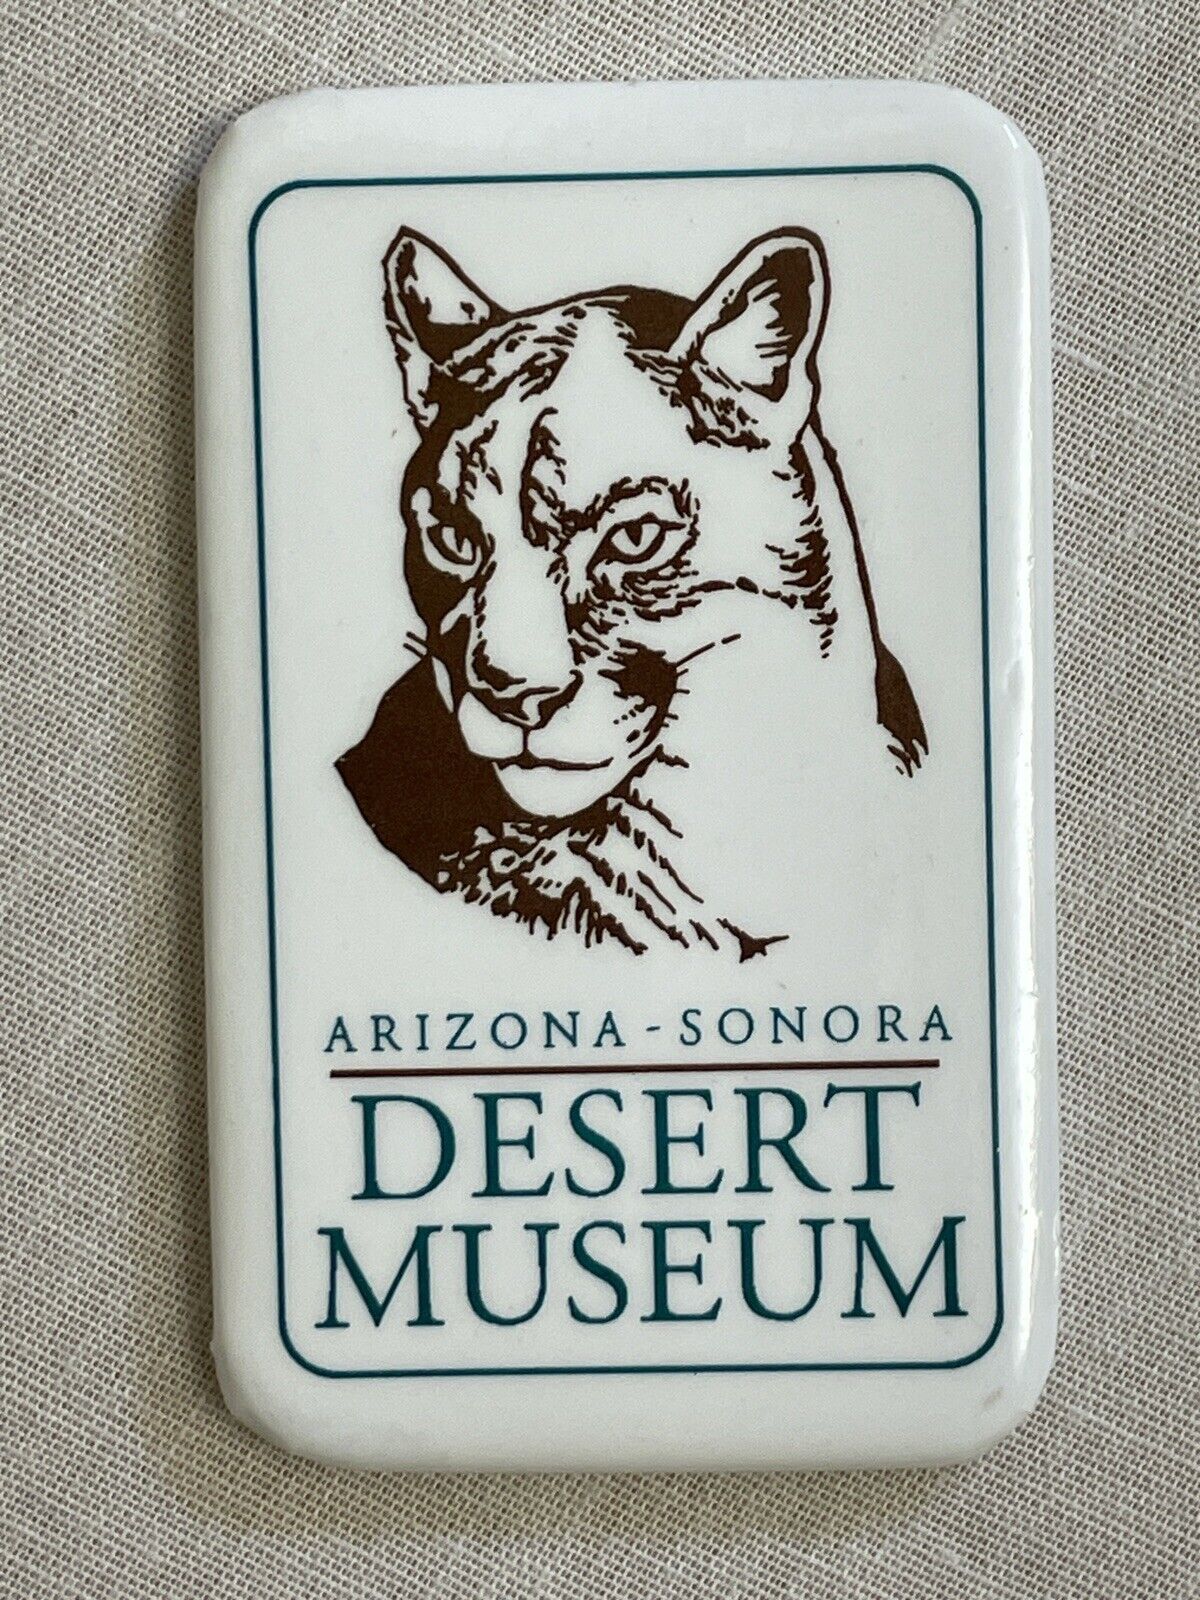 Arizona Sonora Desert Museum Souvenir Fridge Magnet Cougar